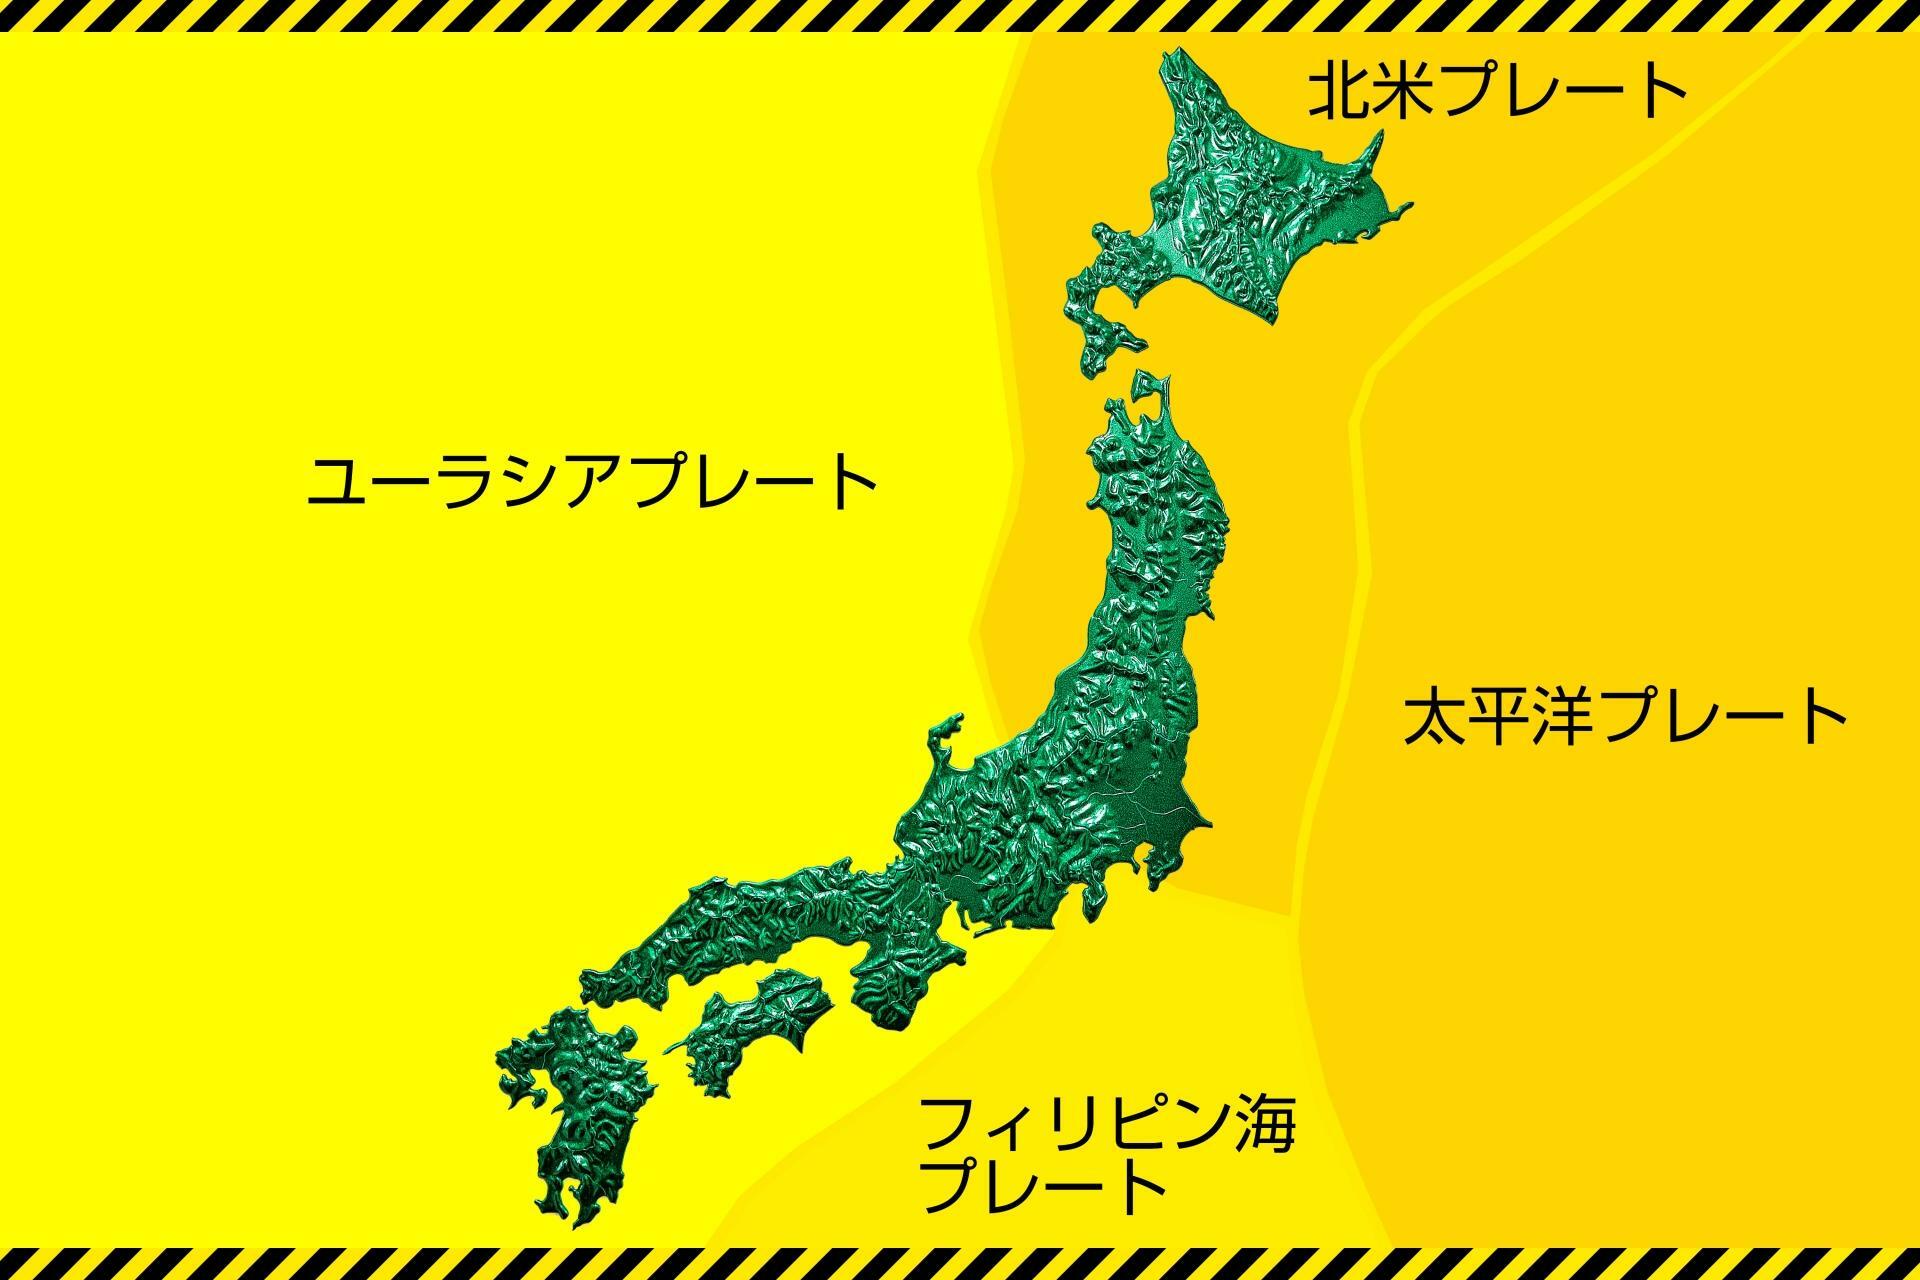 日本は4つの大きなプレートの境界線にある地震大国です